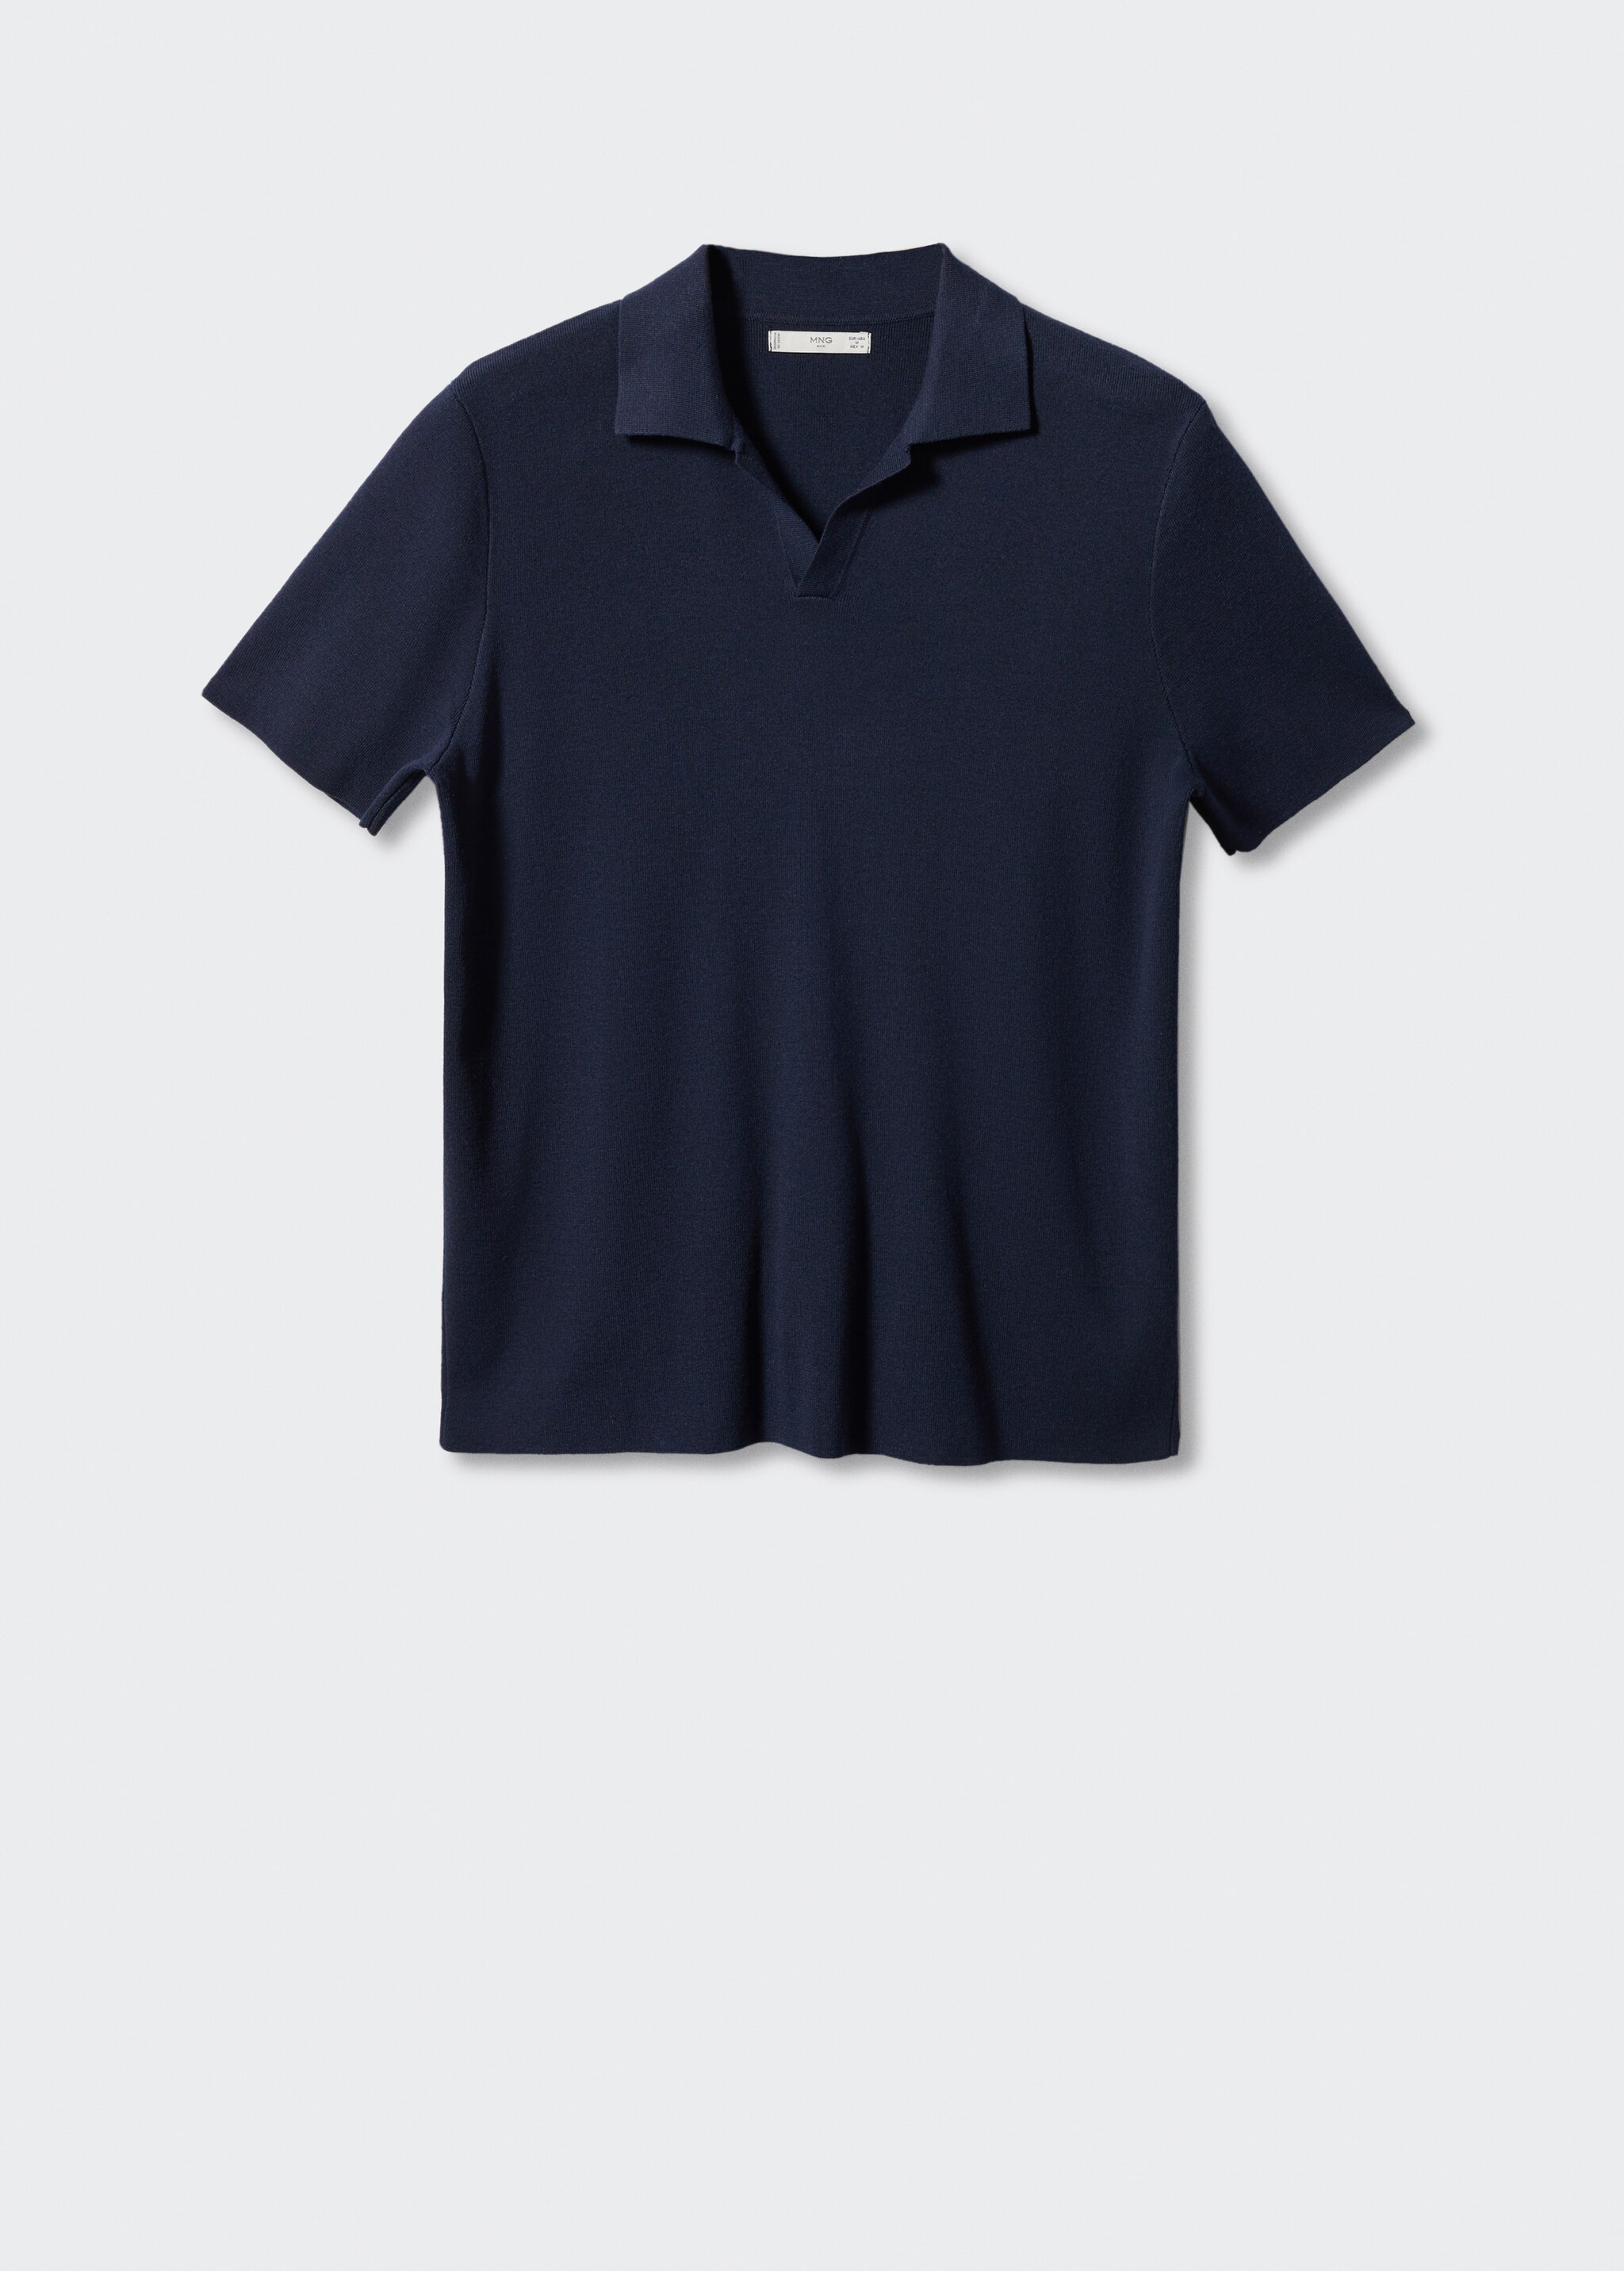 İnce dokuma polo tişört - Modelsiz ürün